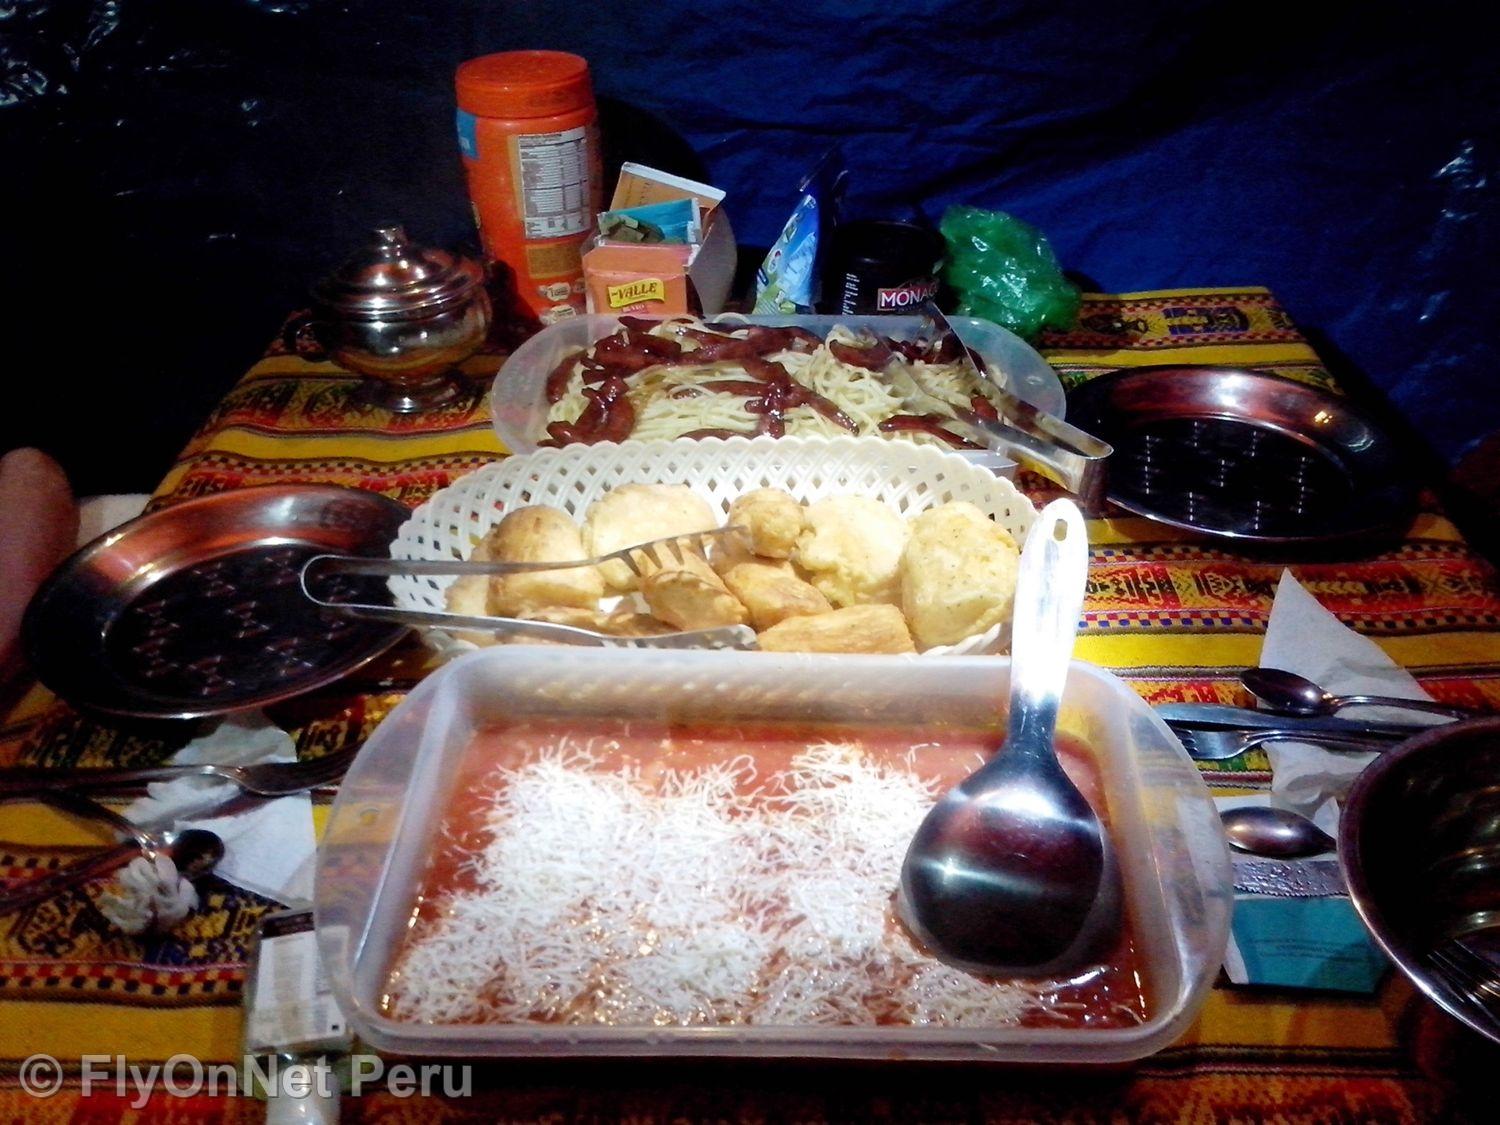 Photo Album: Meal during the trek